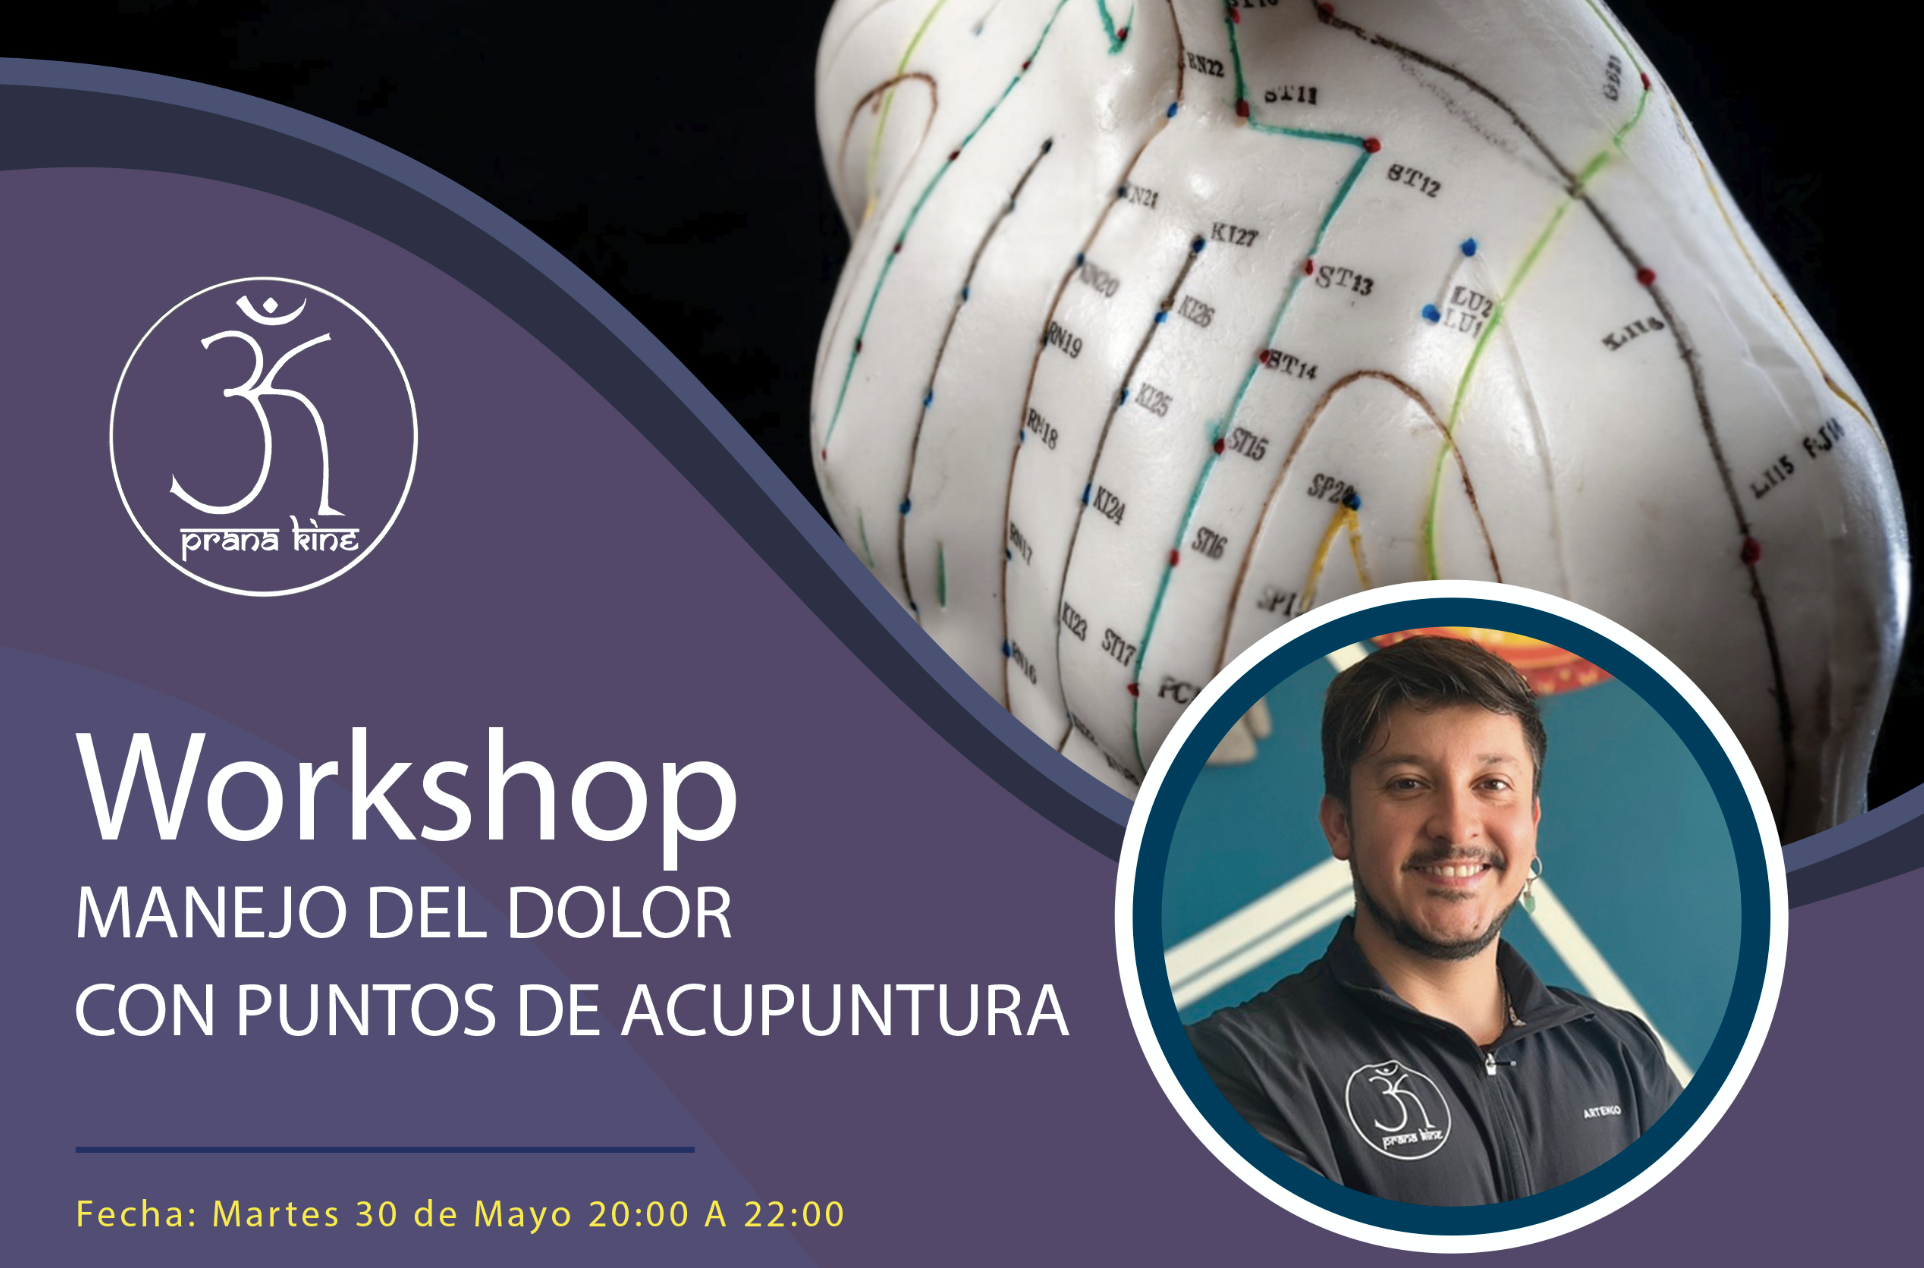 Workshop; Manejo del dolor con puntos de acupuntura